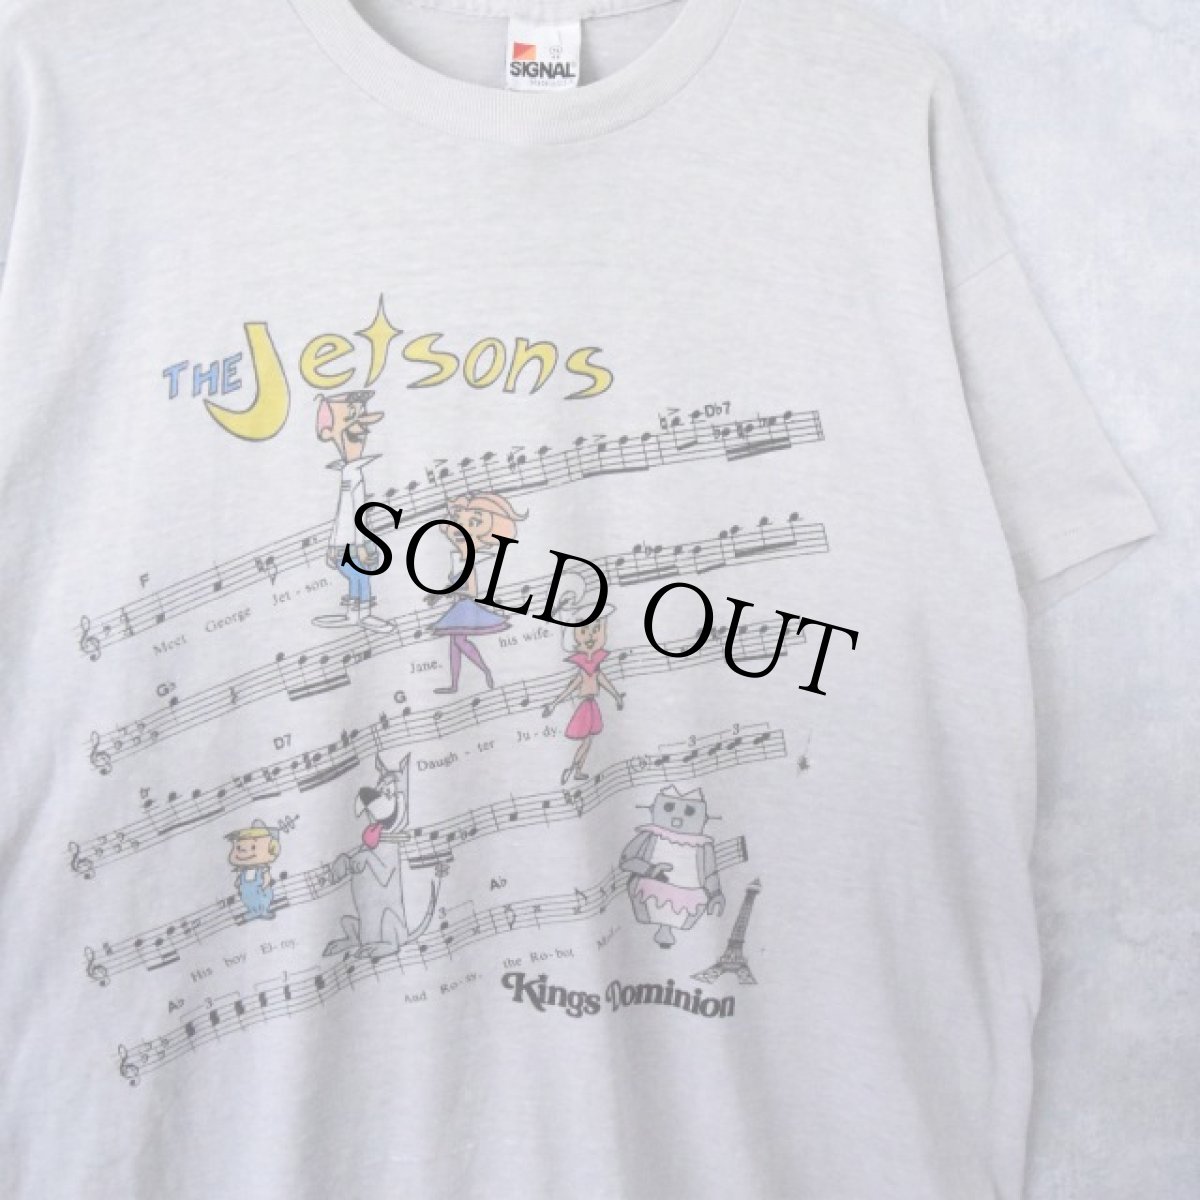 画像1: 80's USA製 "THE Jetsons" テレビアニメプリントTシャツ XL (1)